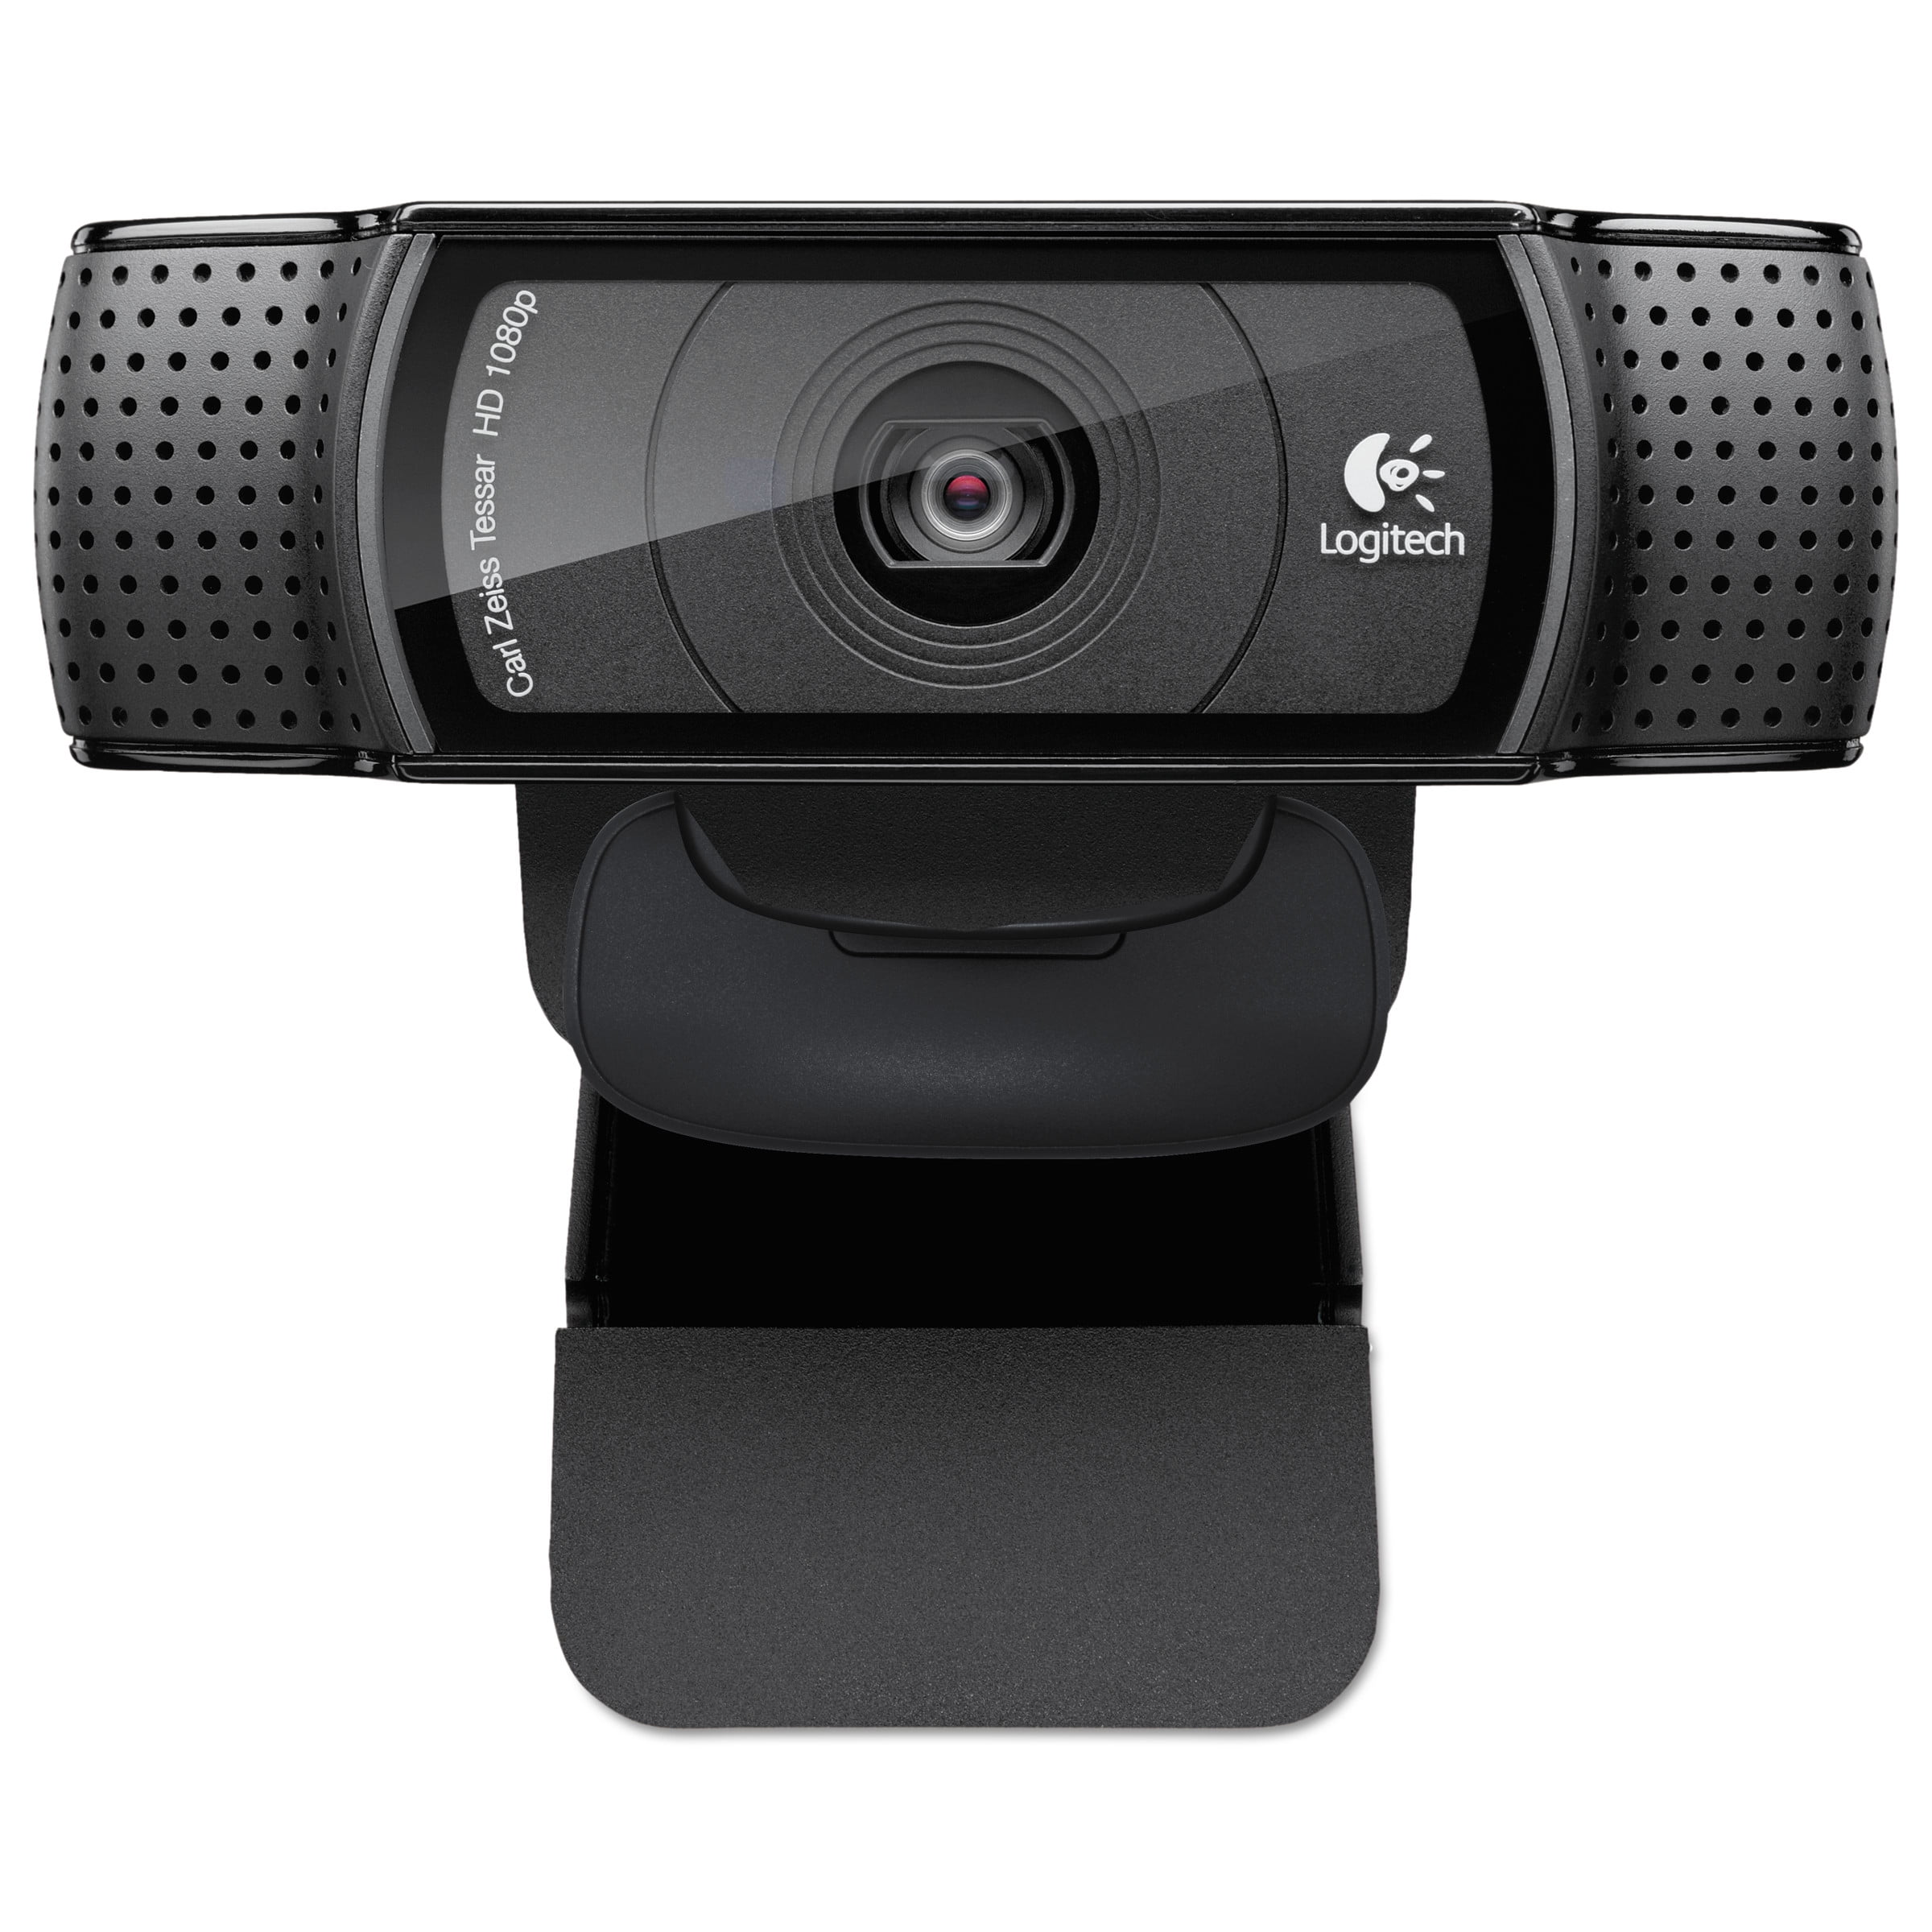 C920 HD Pro Webcam, Black - Walmart.com